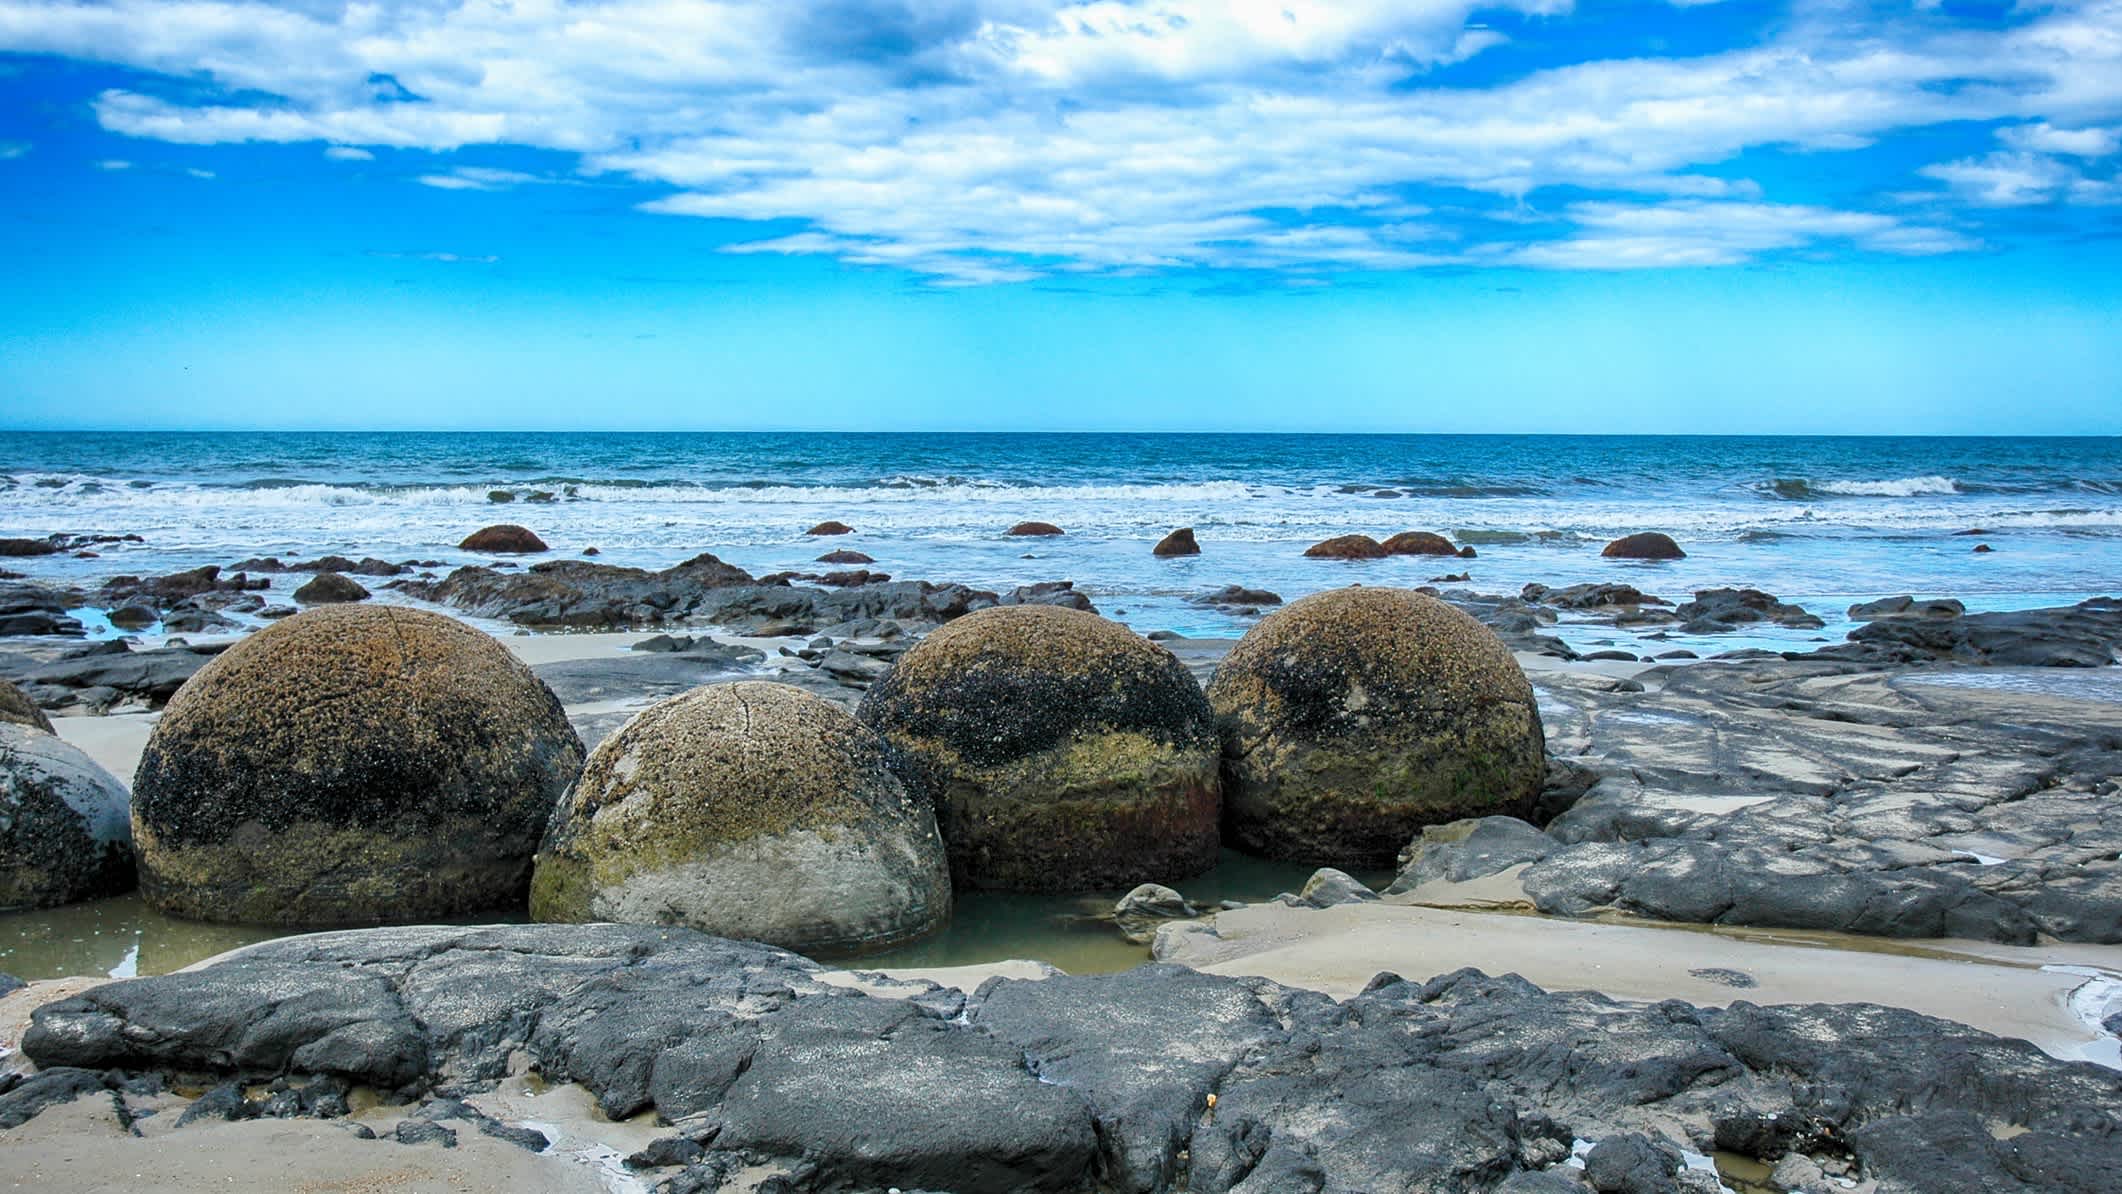 Der Strand Moeraki Boulders am Koekohe Beach in der Nähe von Oamaru, Neuseeland mit vielen Felsen im Bild und Blick auf das Wasser.